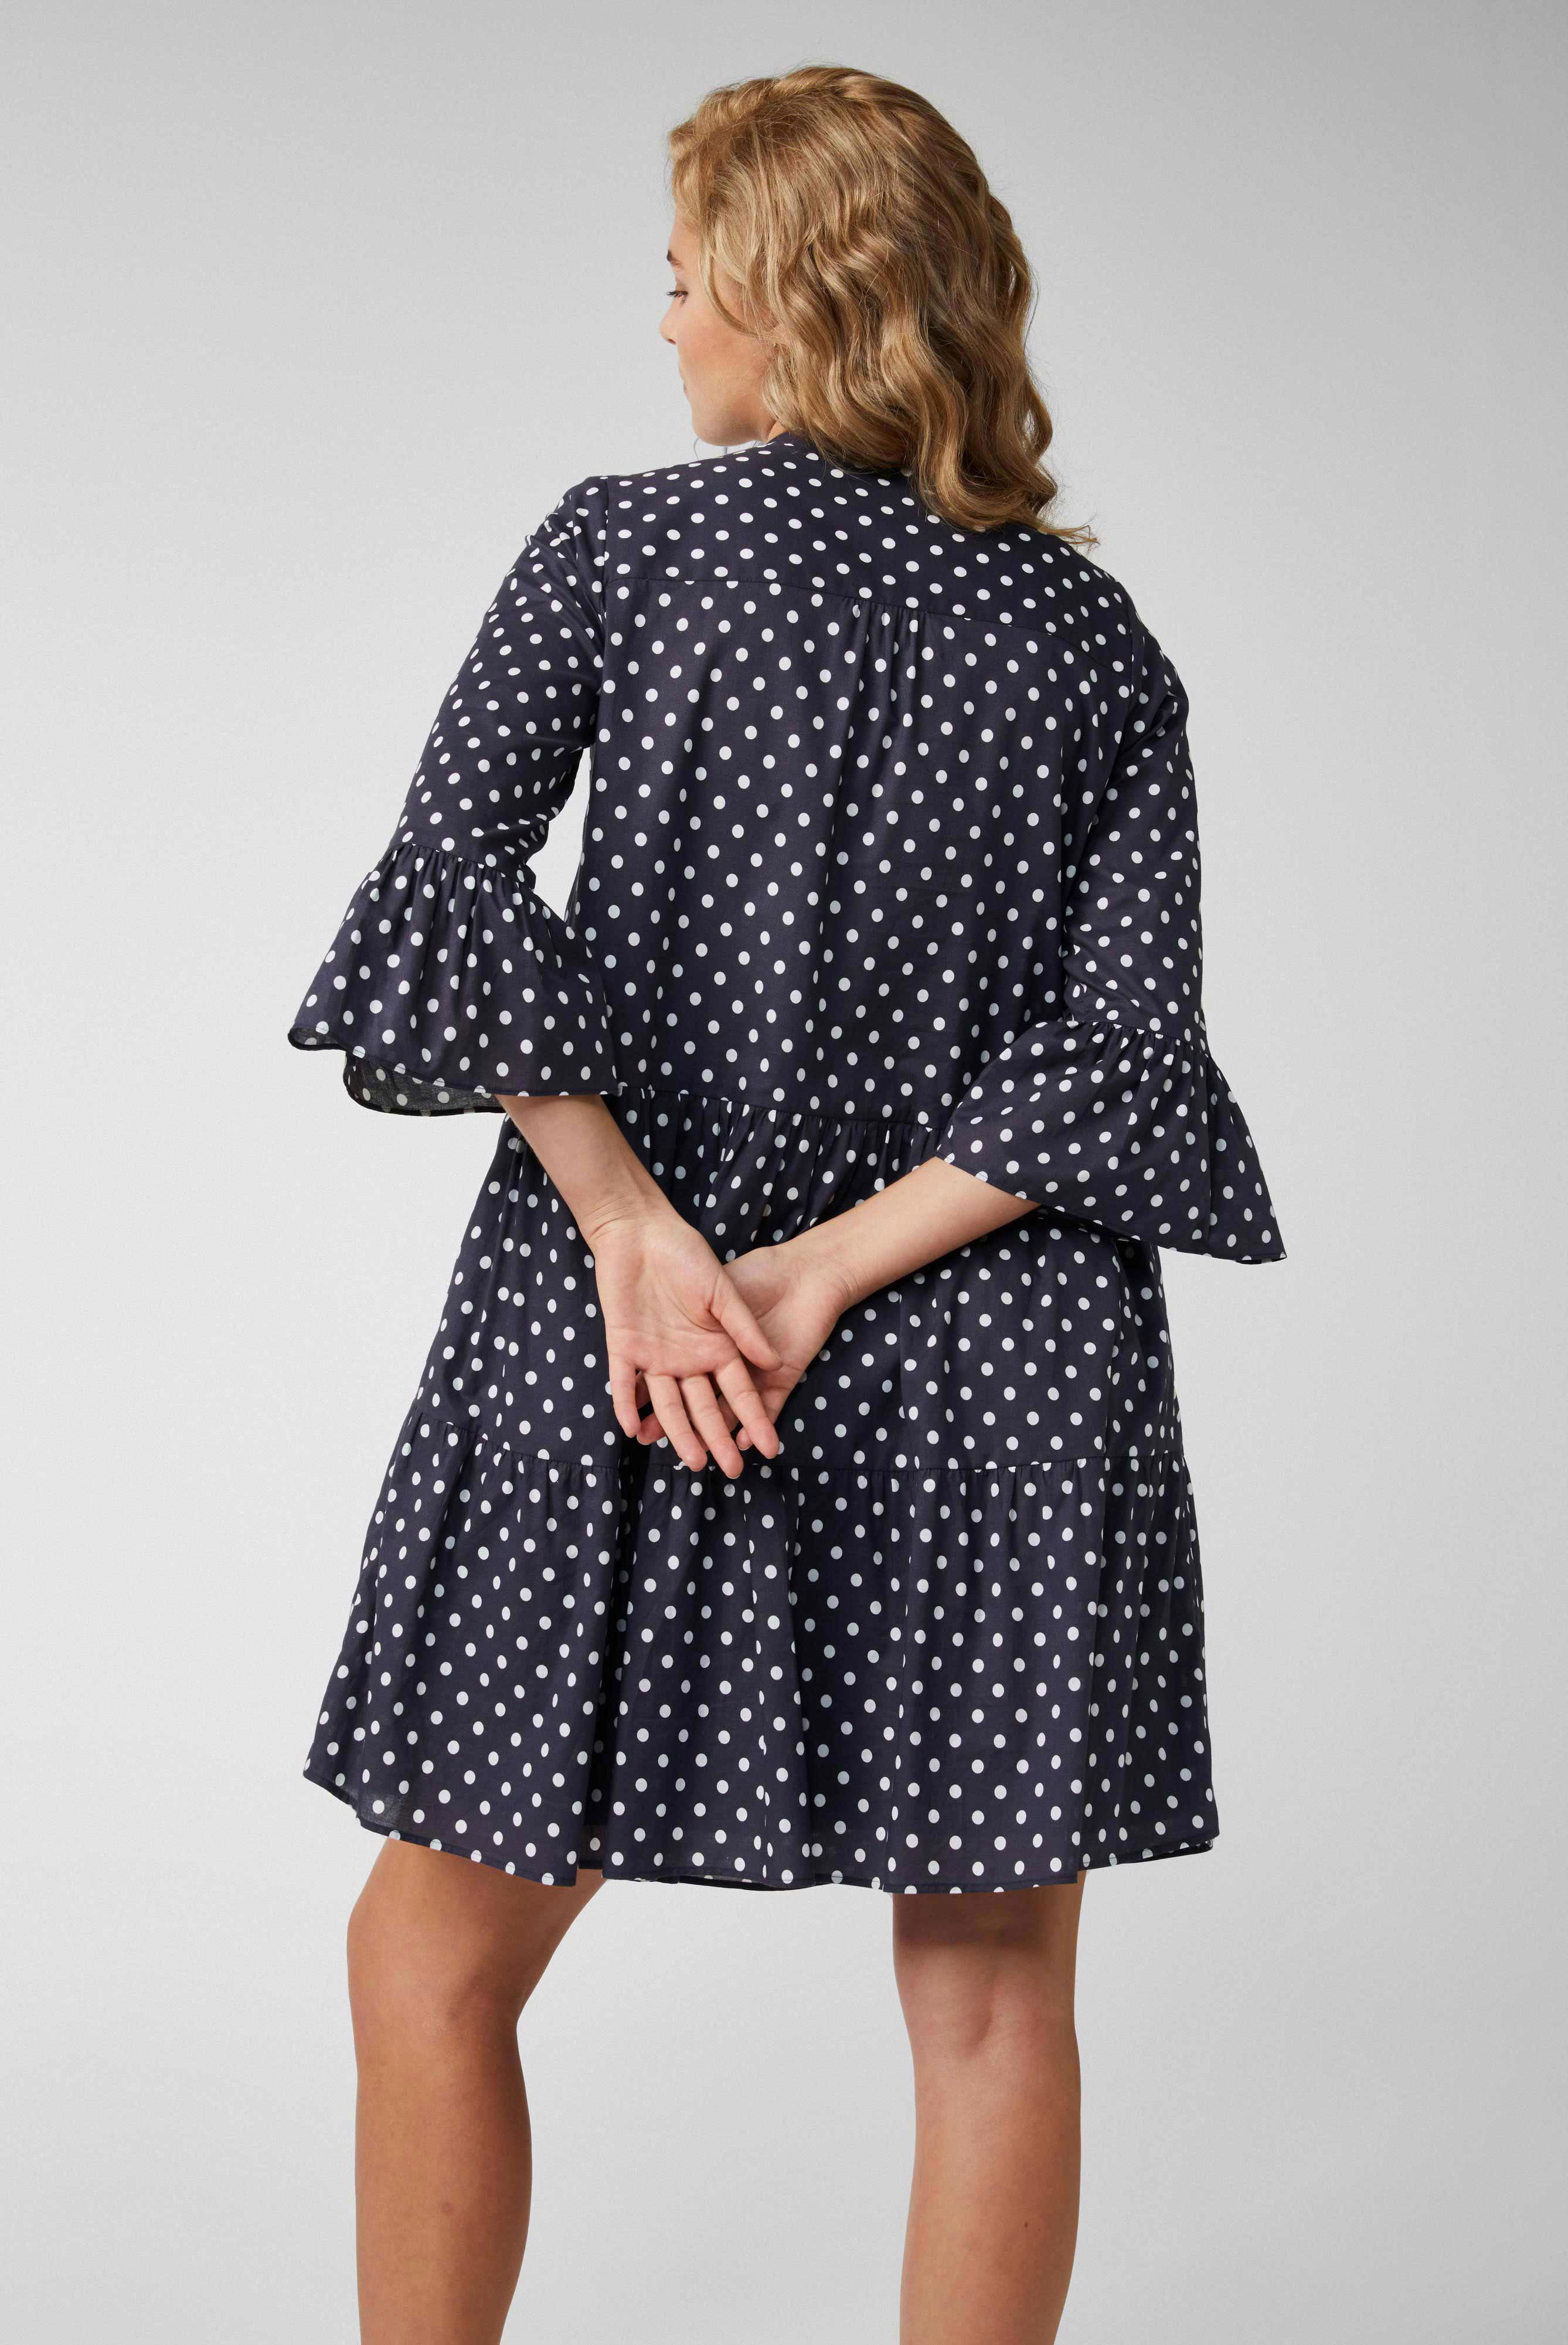 Kleider & Röcke+Mini-Slip-on-Kleid mit Godet-Details aus Baumwoll-Voile mit Punktdruck Blau+05.654Z.3F.170256.790.40